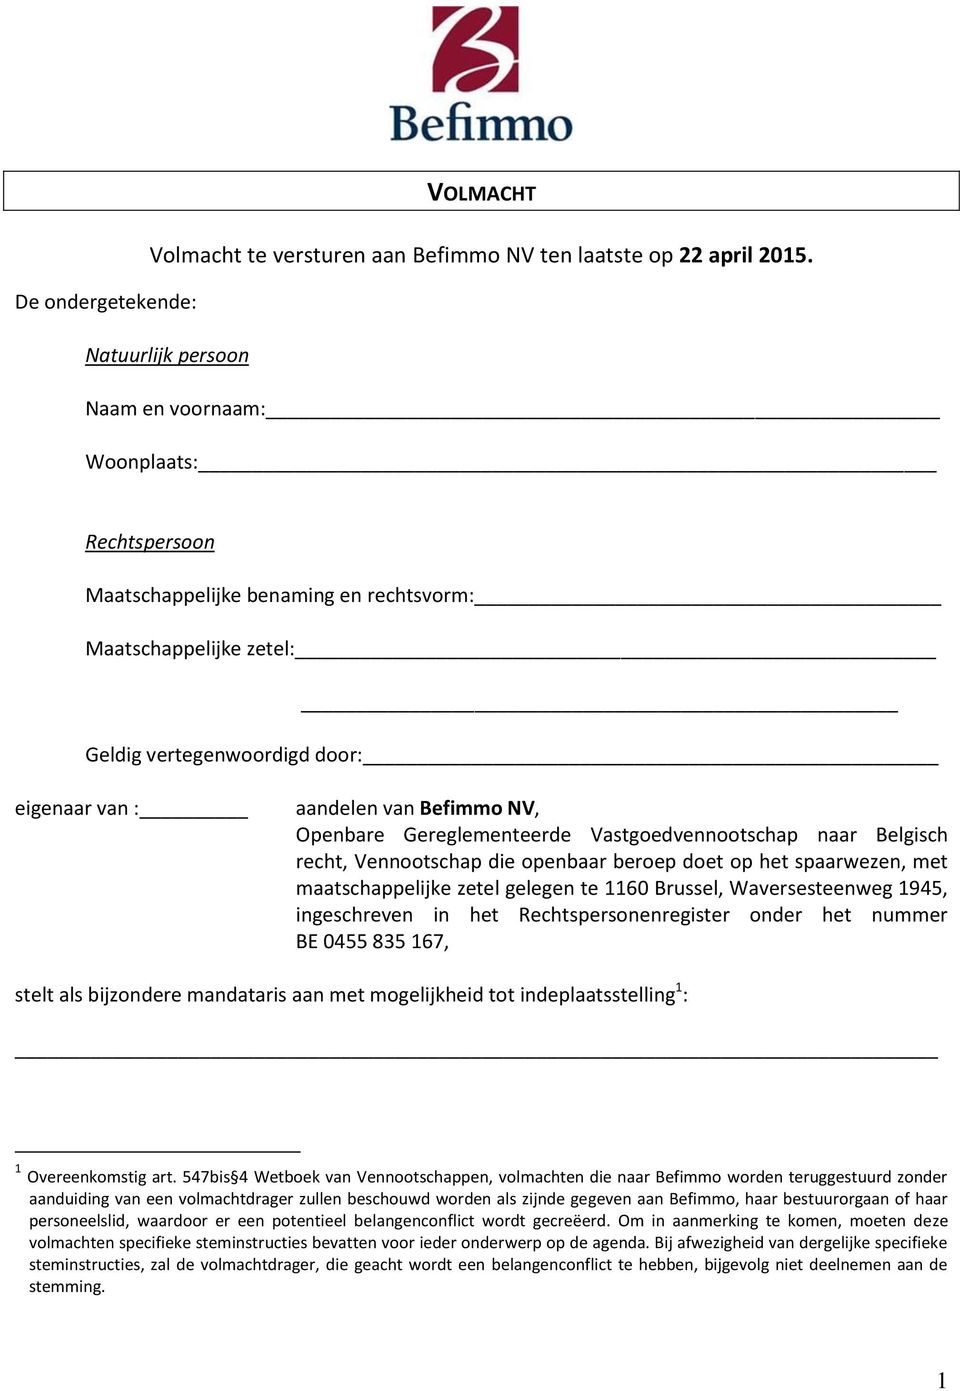 aandelen van Befimmo NV, Openbare Gereglementeerde Vastgoedvennootschap naar Belgisch recht, Vennootschap die openbaar beroep doet op het spaarwezen, met maatschappelijke zetel gelegen te 1160